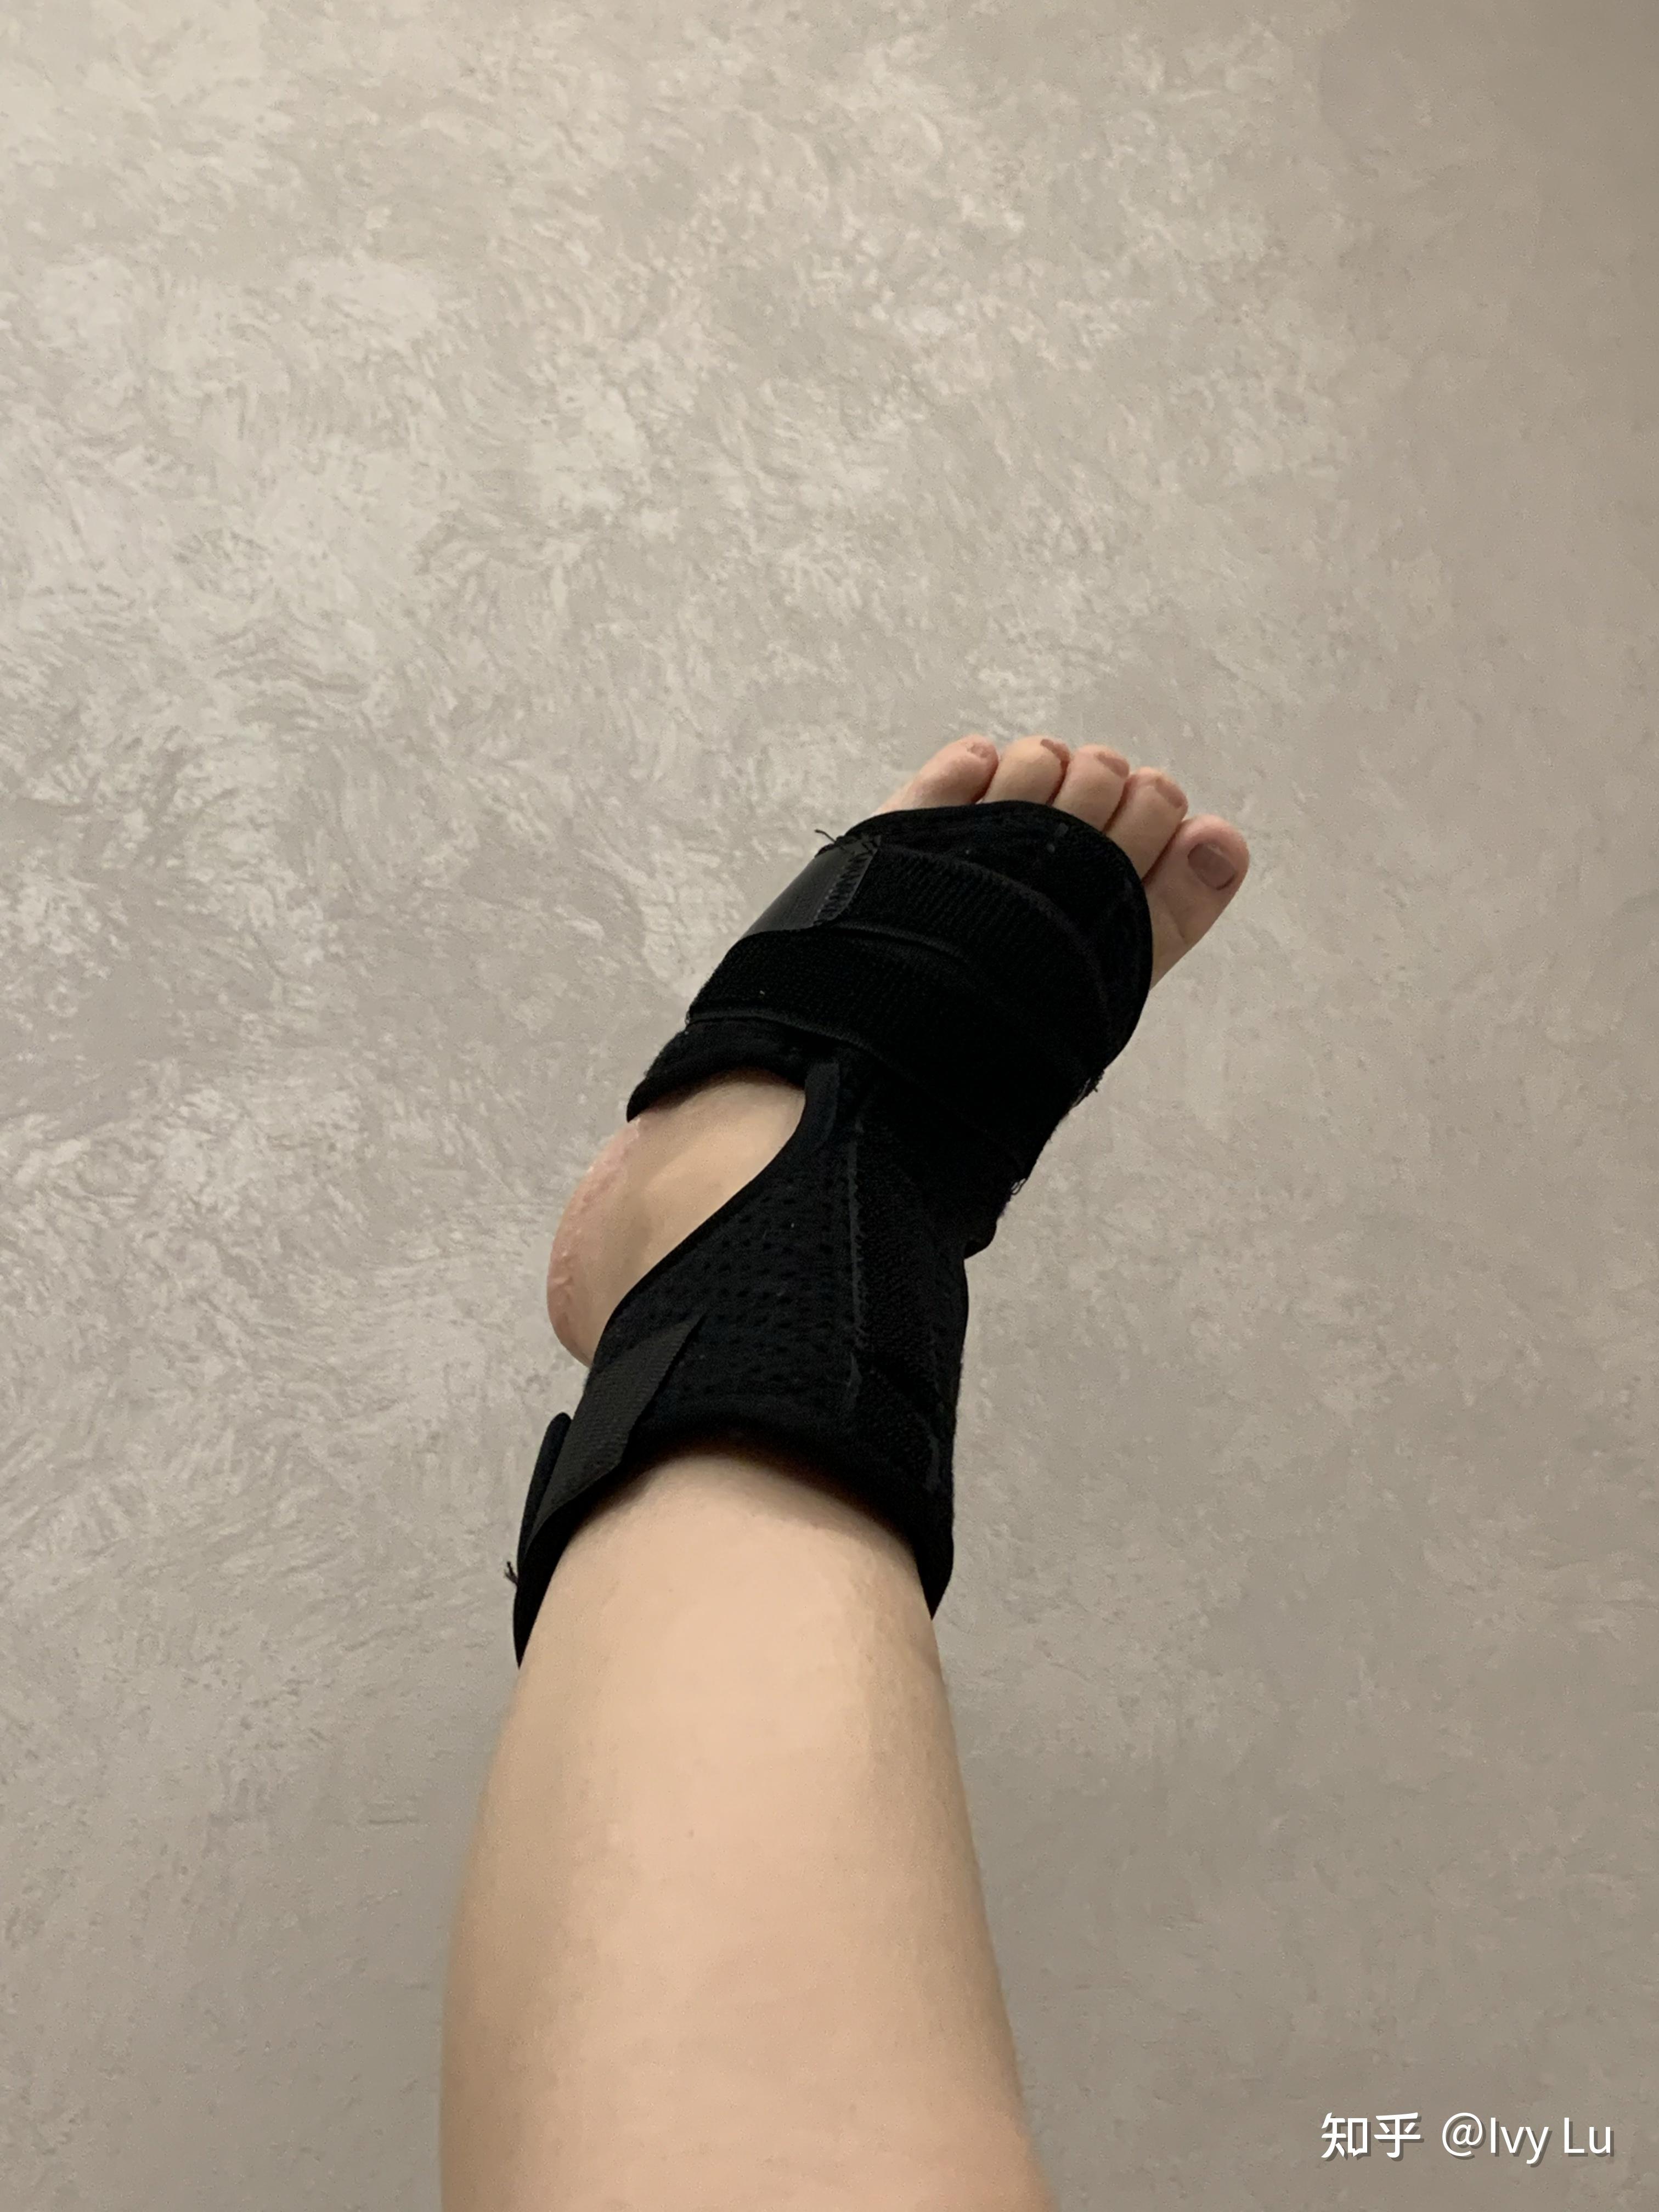 左脚第5趾骨骨折 之 治疗 生活日常记录(202111